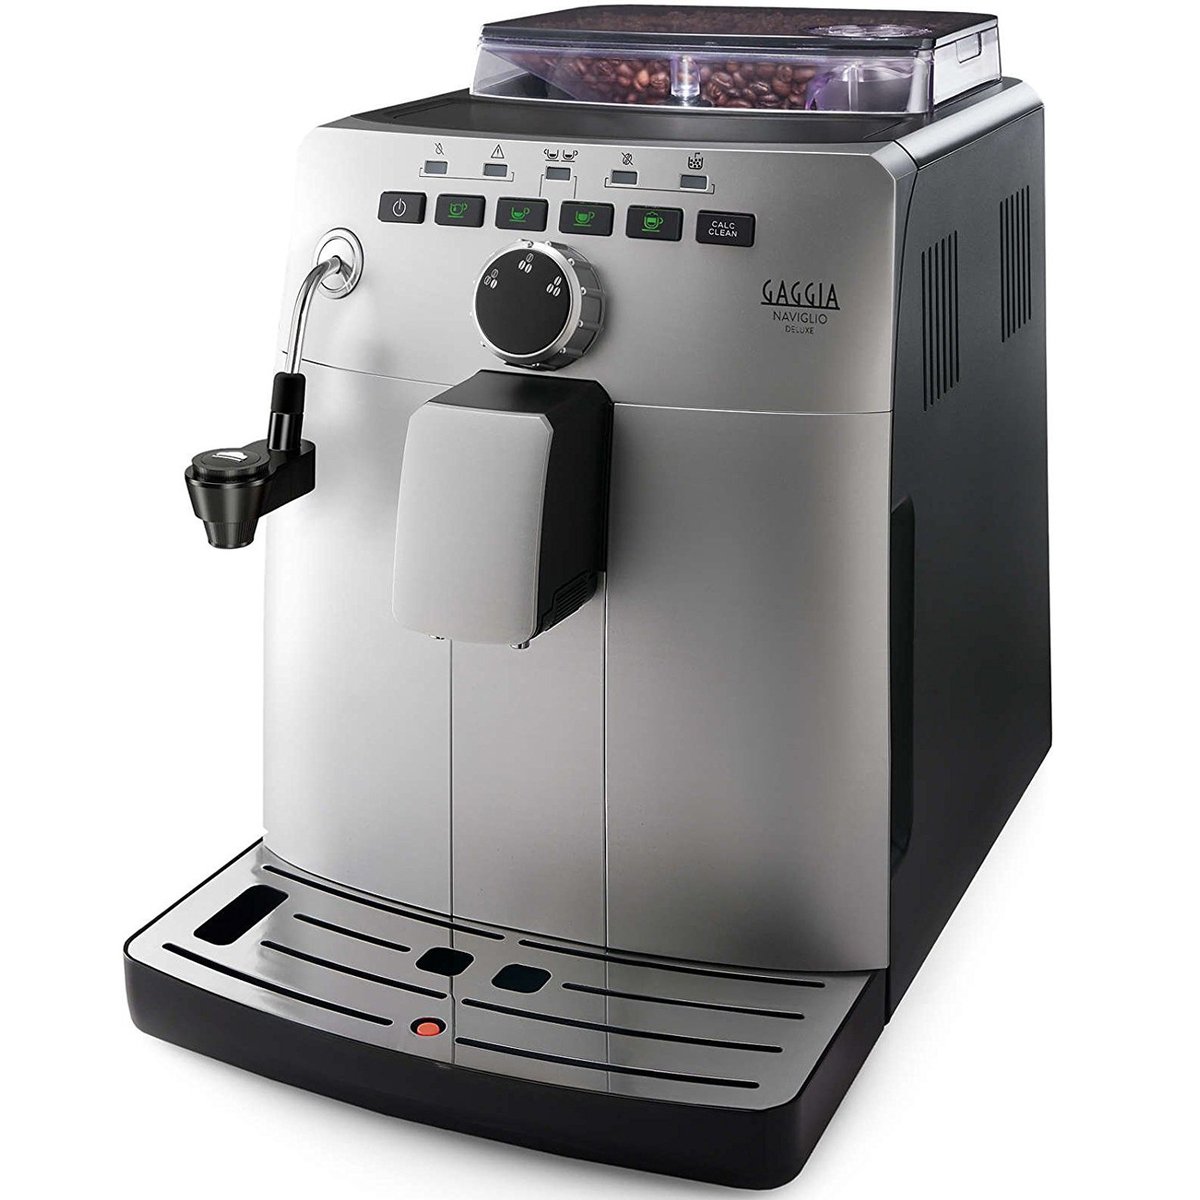 Gaggia Automatic Coffee Maker Naviglio DLX